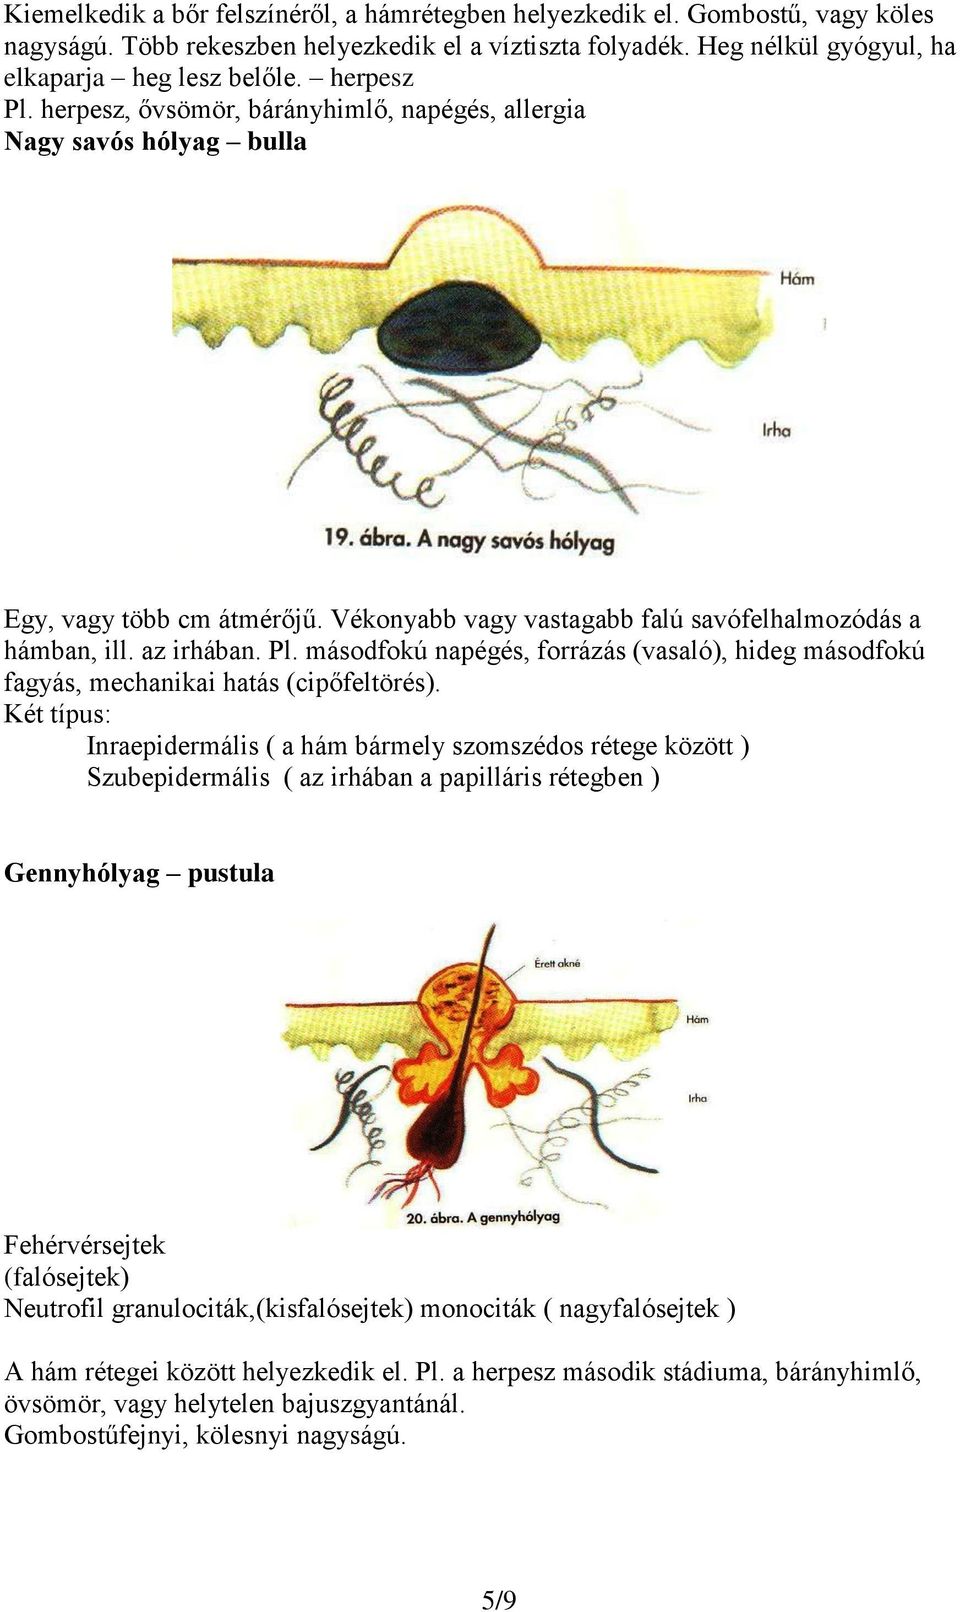 Két típus: Inraepidermális ( a hám bármely szomszédos rétege között ) Szubepidermális ( az irhában a papilláris rétegben ) Gennyhólyag pustula Fehérvérsejtek (falósejtek) Neutrofil